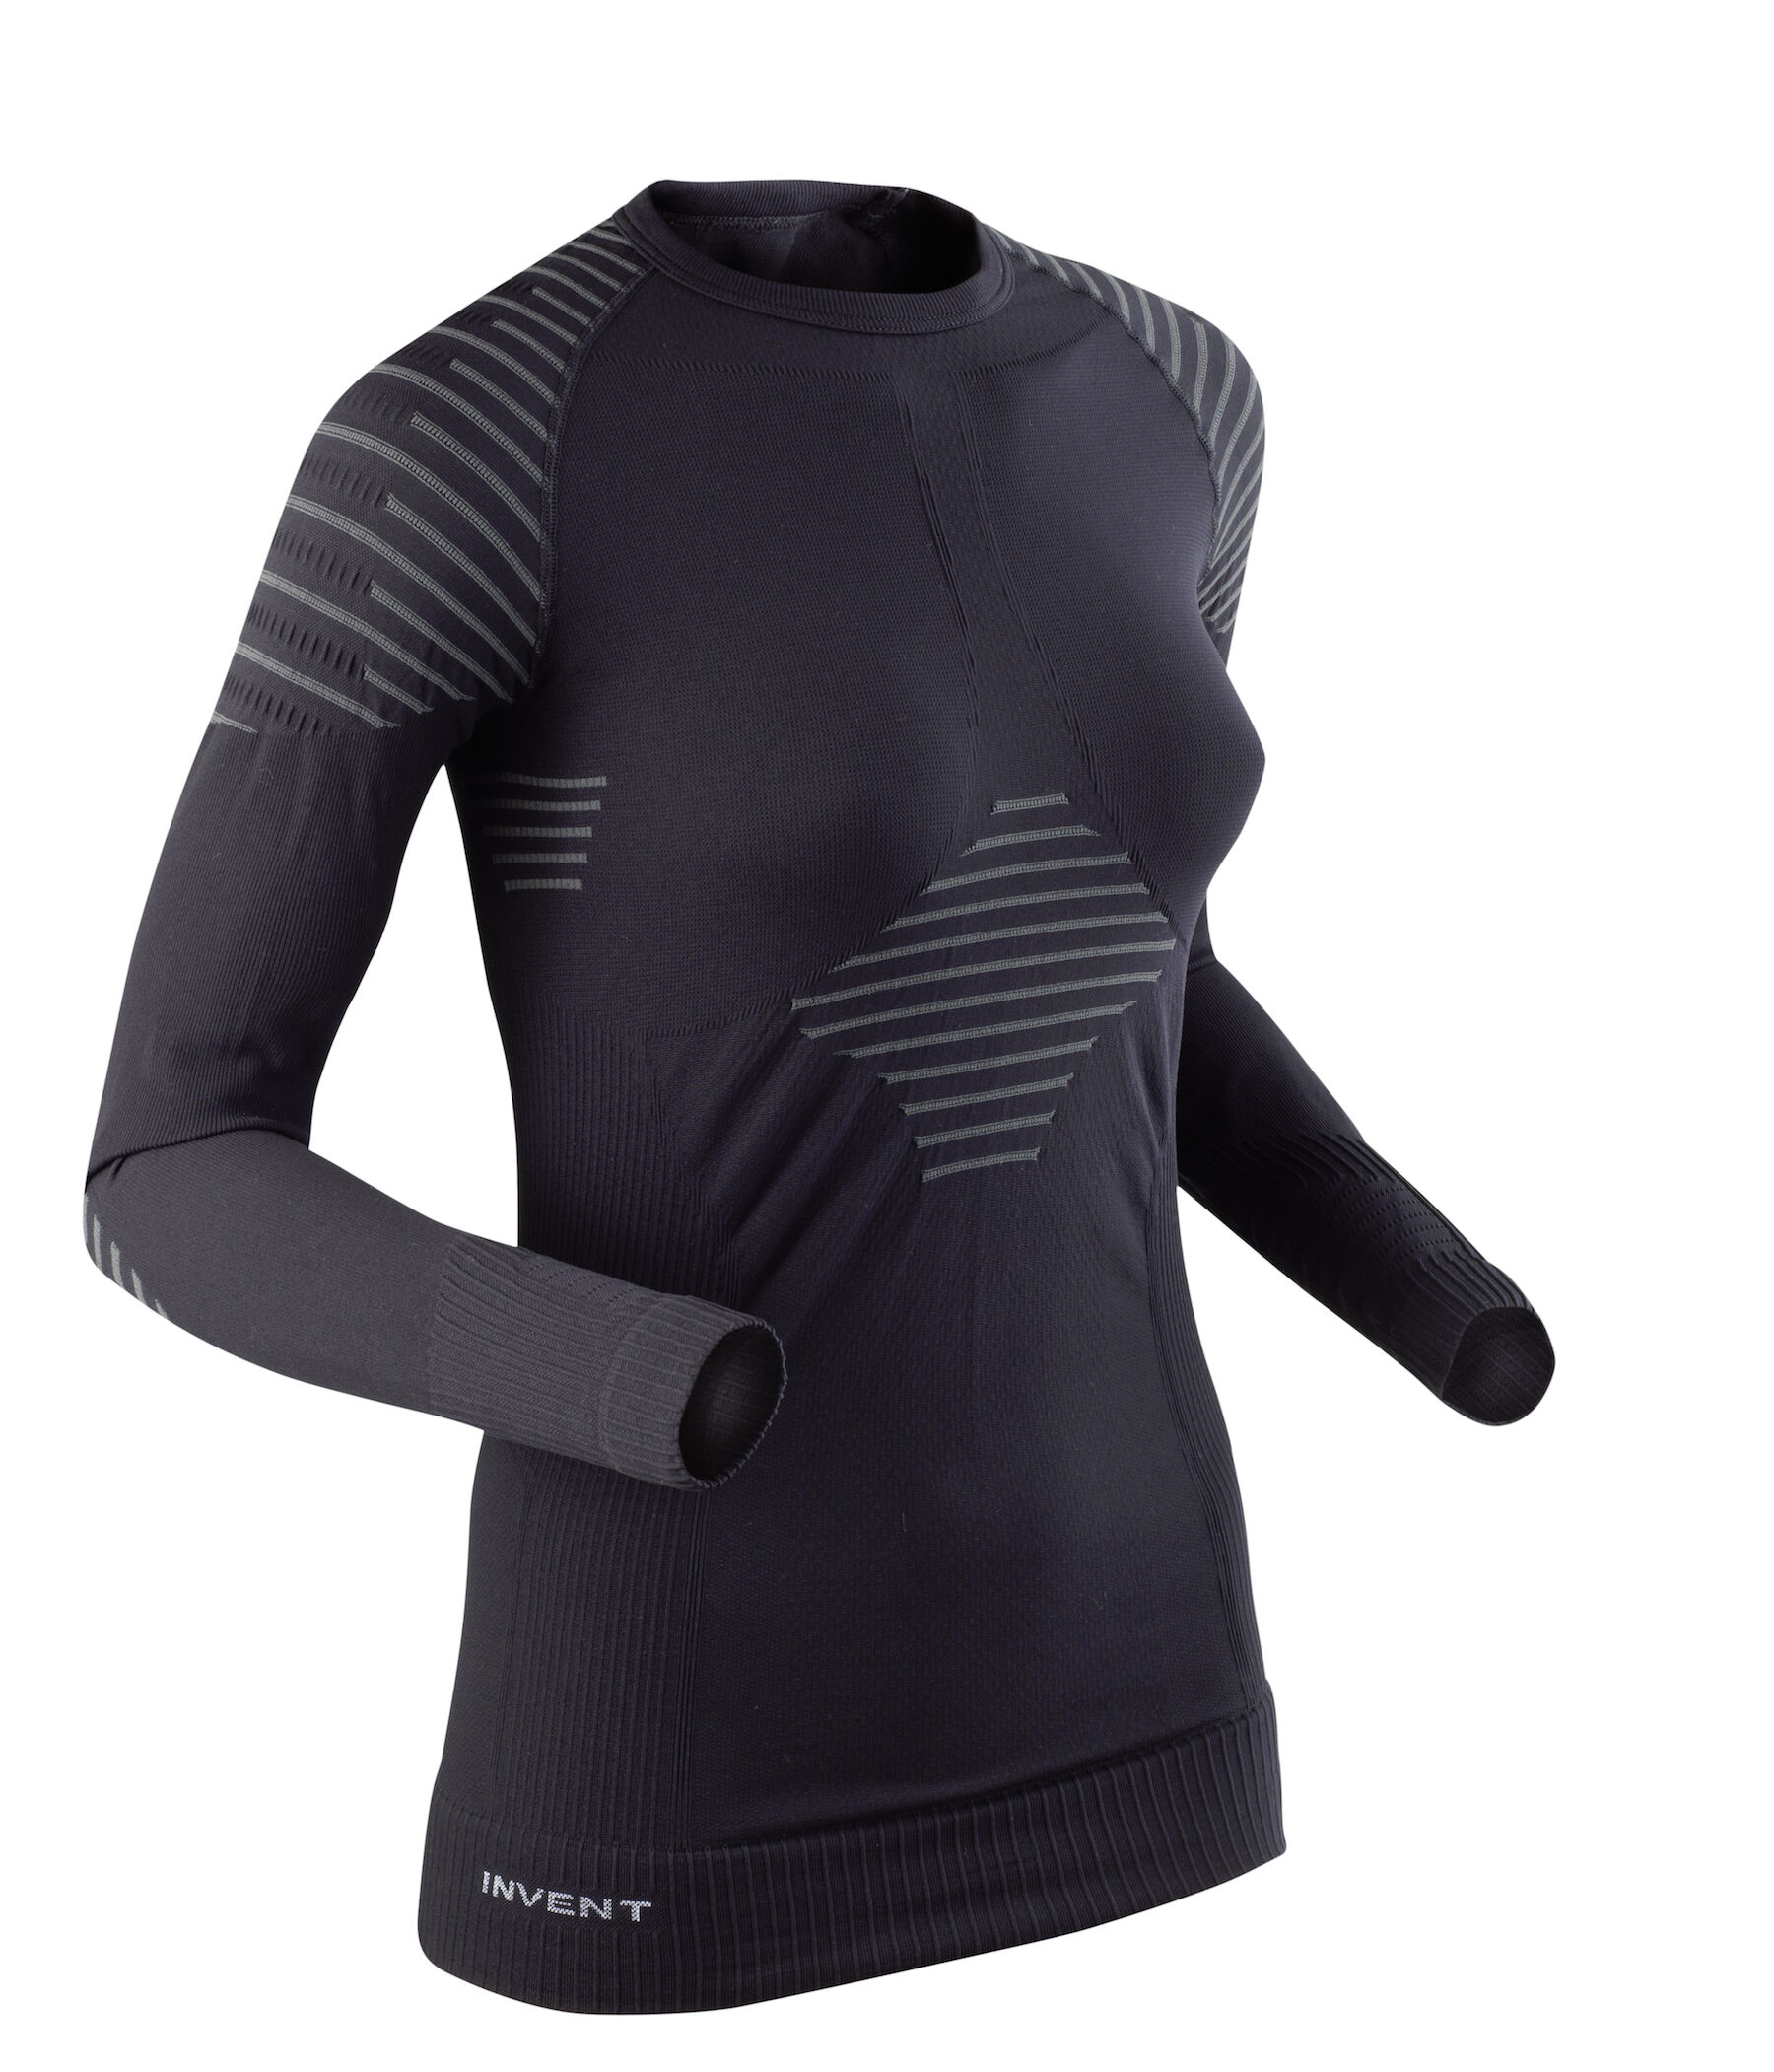 X-Bionic Invent shirt long sleeves - Funktionsshirt - Damen